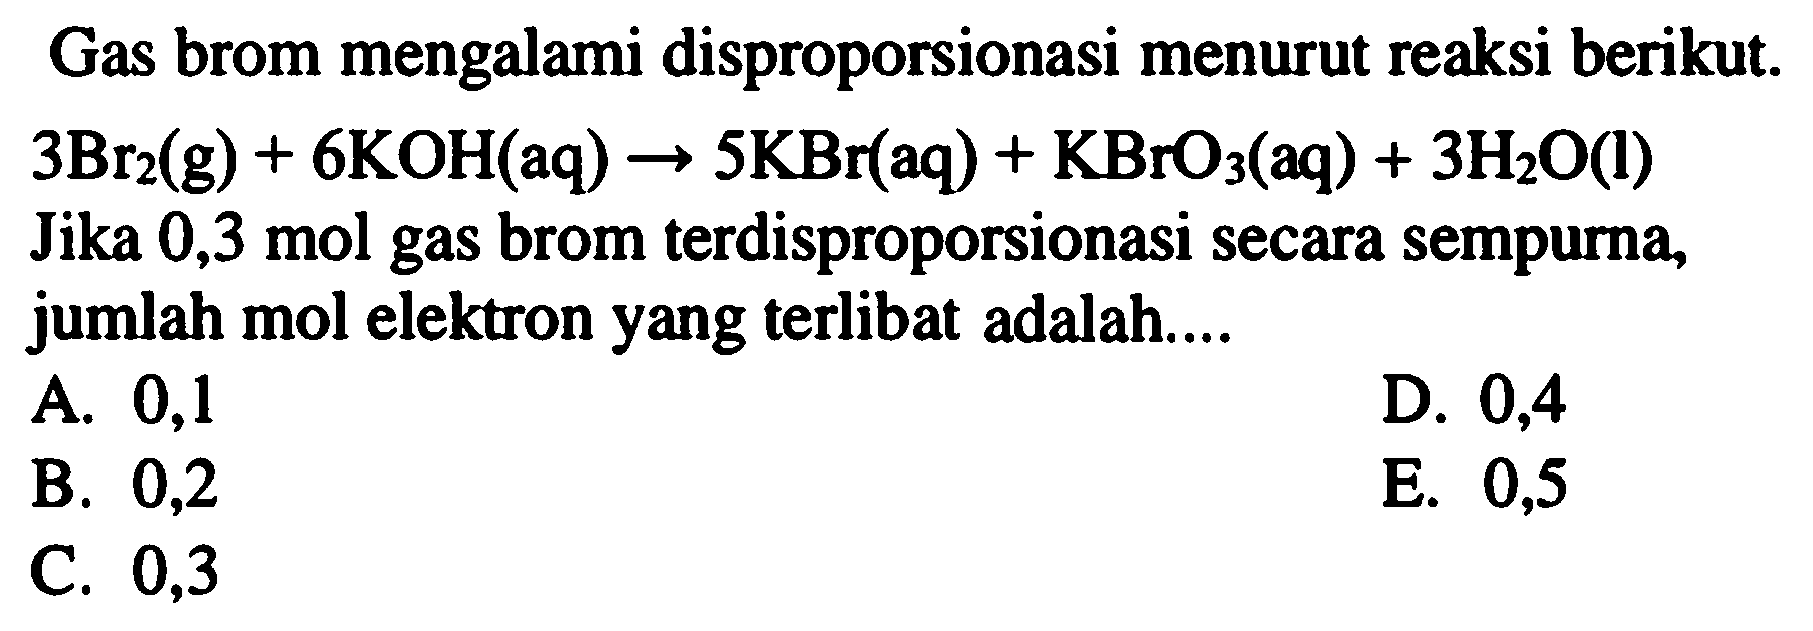 Gas brom mengalami disproporsionasi menurut reaksi berikut.  3 Br_(2)(g)+6 KOH(aq) -> 5 KBr(aq)+KBrO_(3)(aq)+3 H_(2) O(l)  Jika 0,3 mol gas brom terdisproporsionasi secara sempurna, jumlah mol elektron yang terlibat adalah....
A. 0,1
D. 0,4
B. 0,2
E. 0,5
C. 0,3